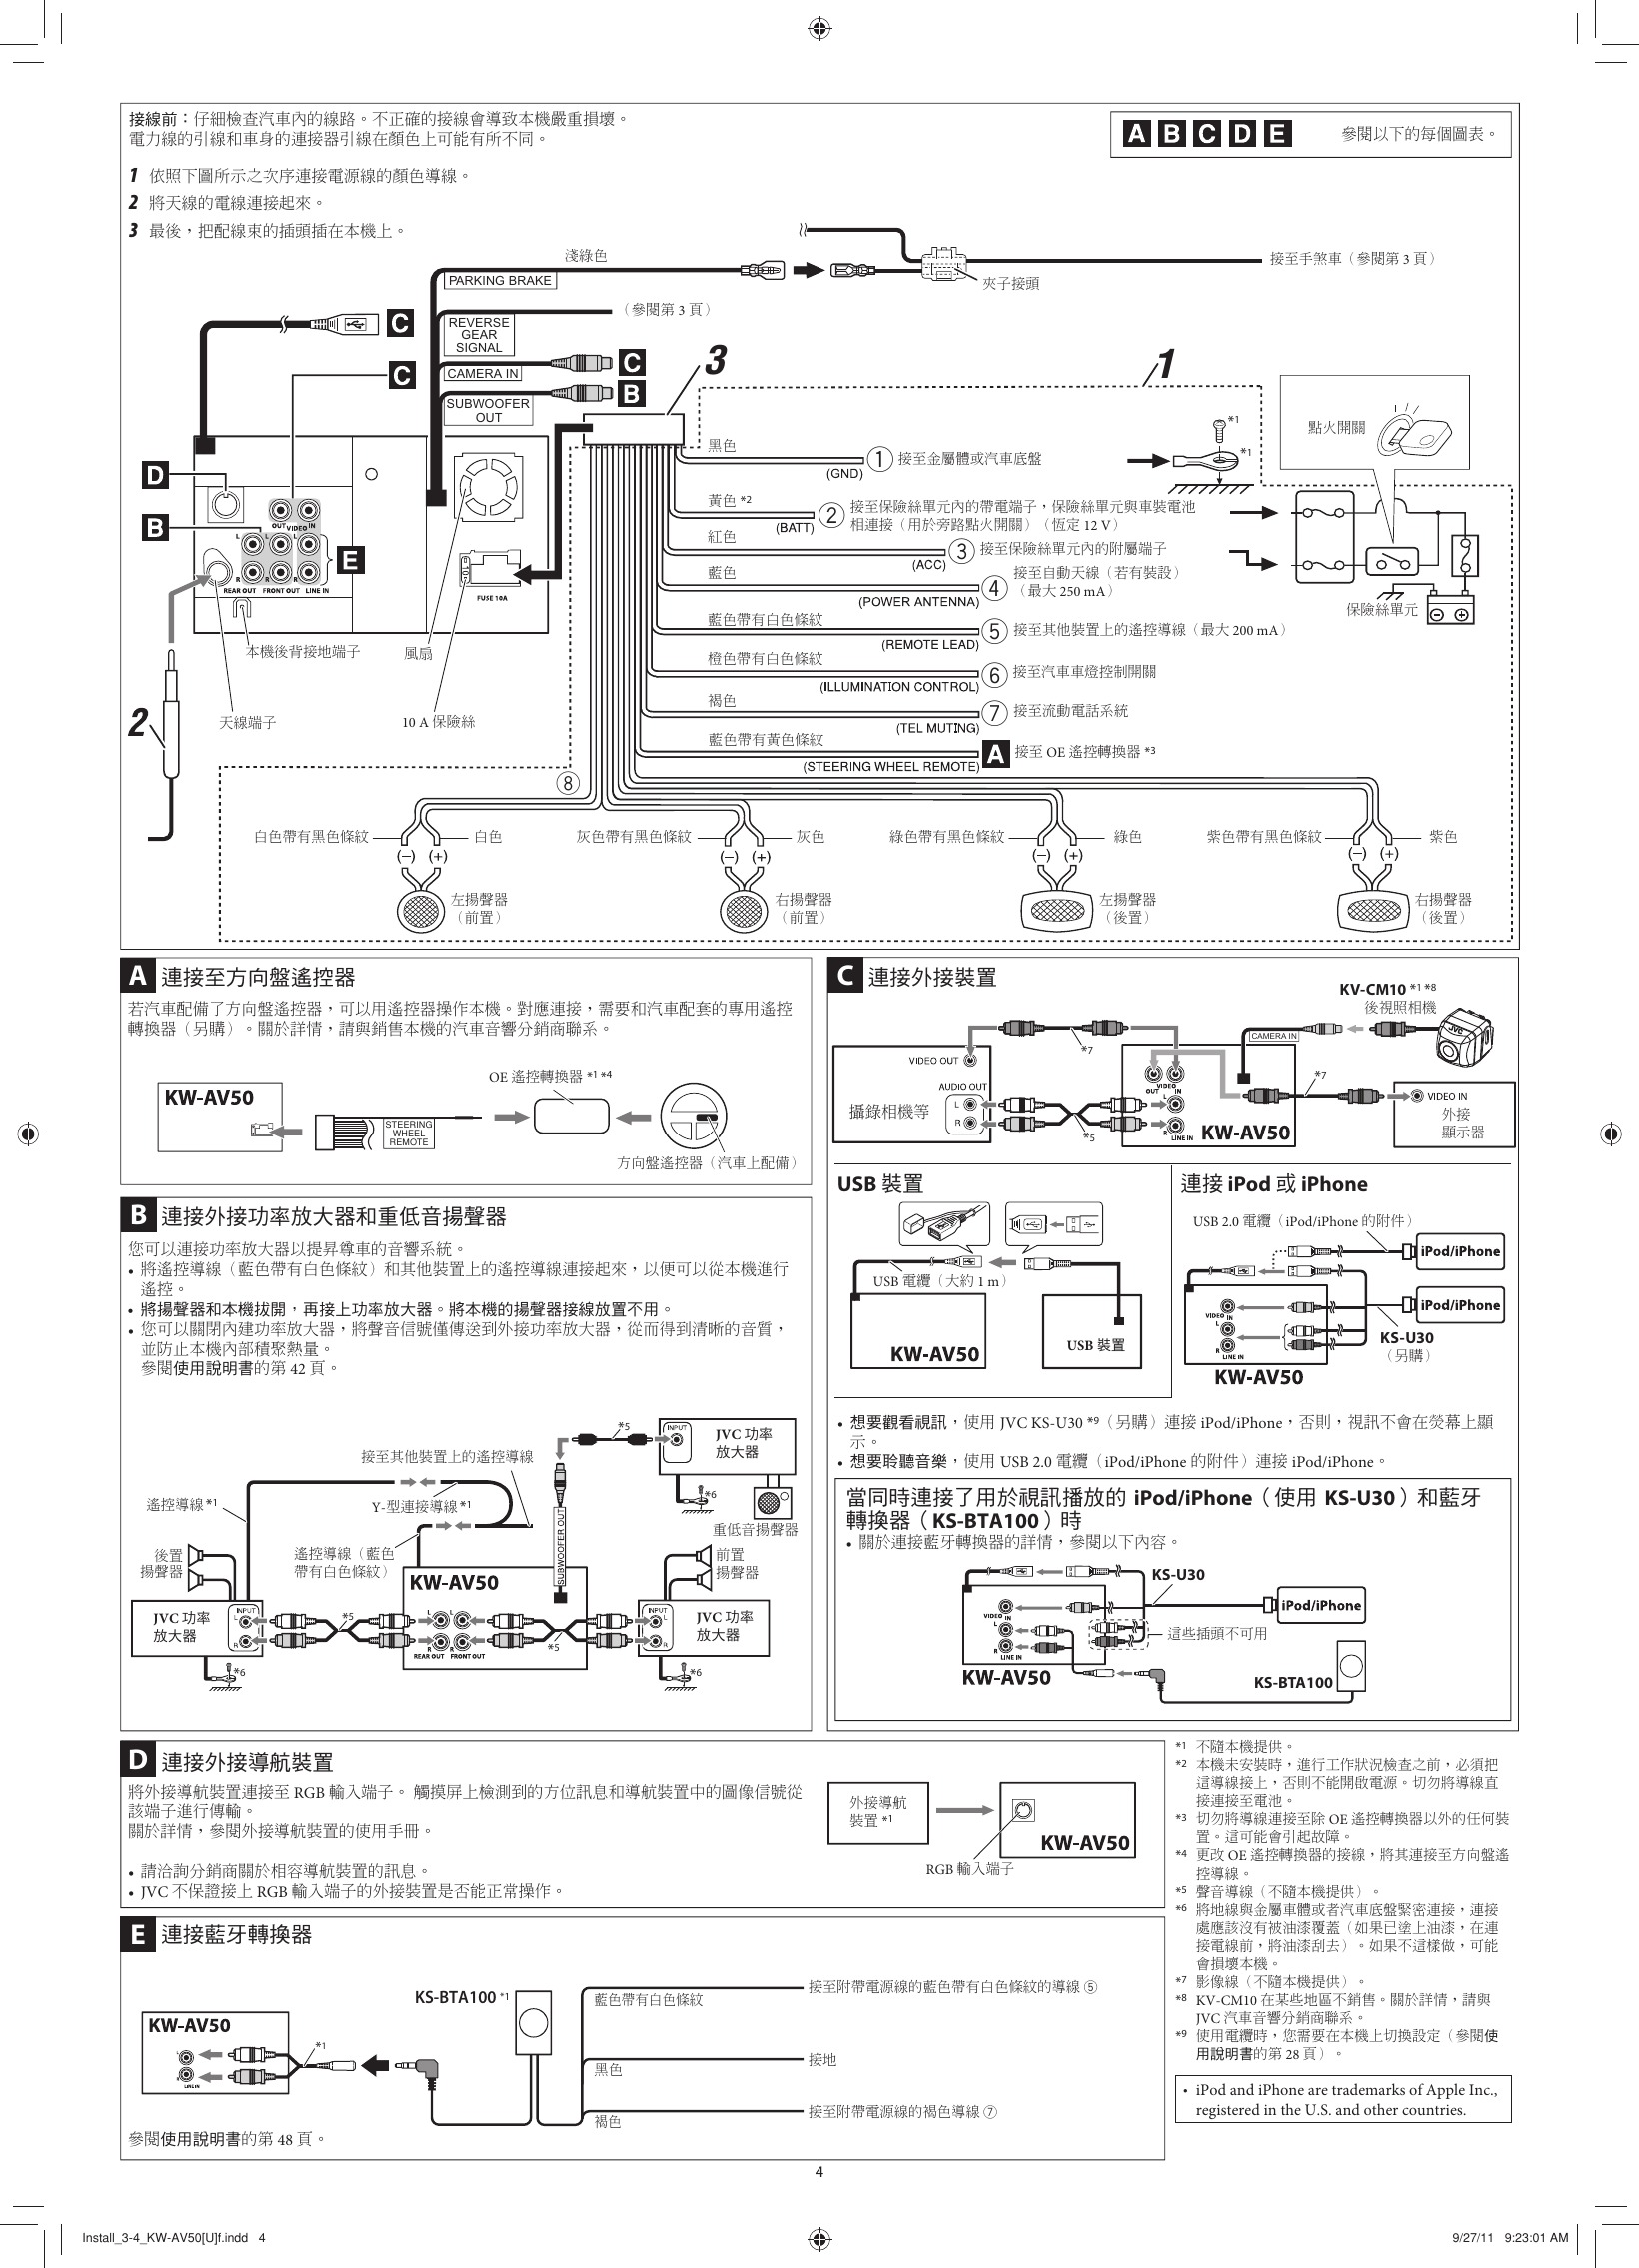 Page 4 of 6 - JVC KW-AV50U KW-AV50[U] User Manual LVT2288-002A